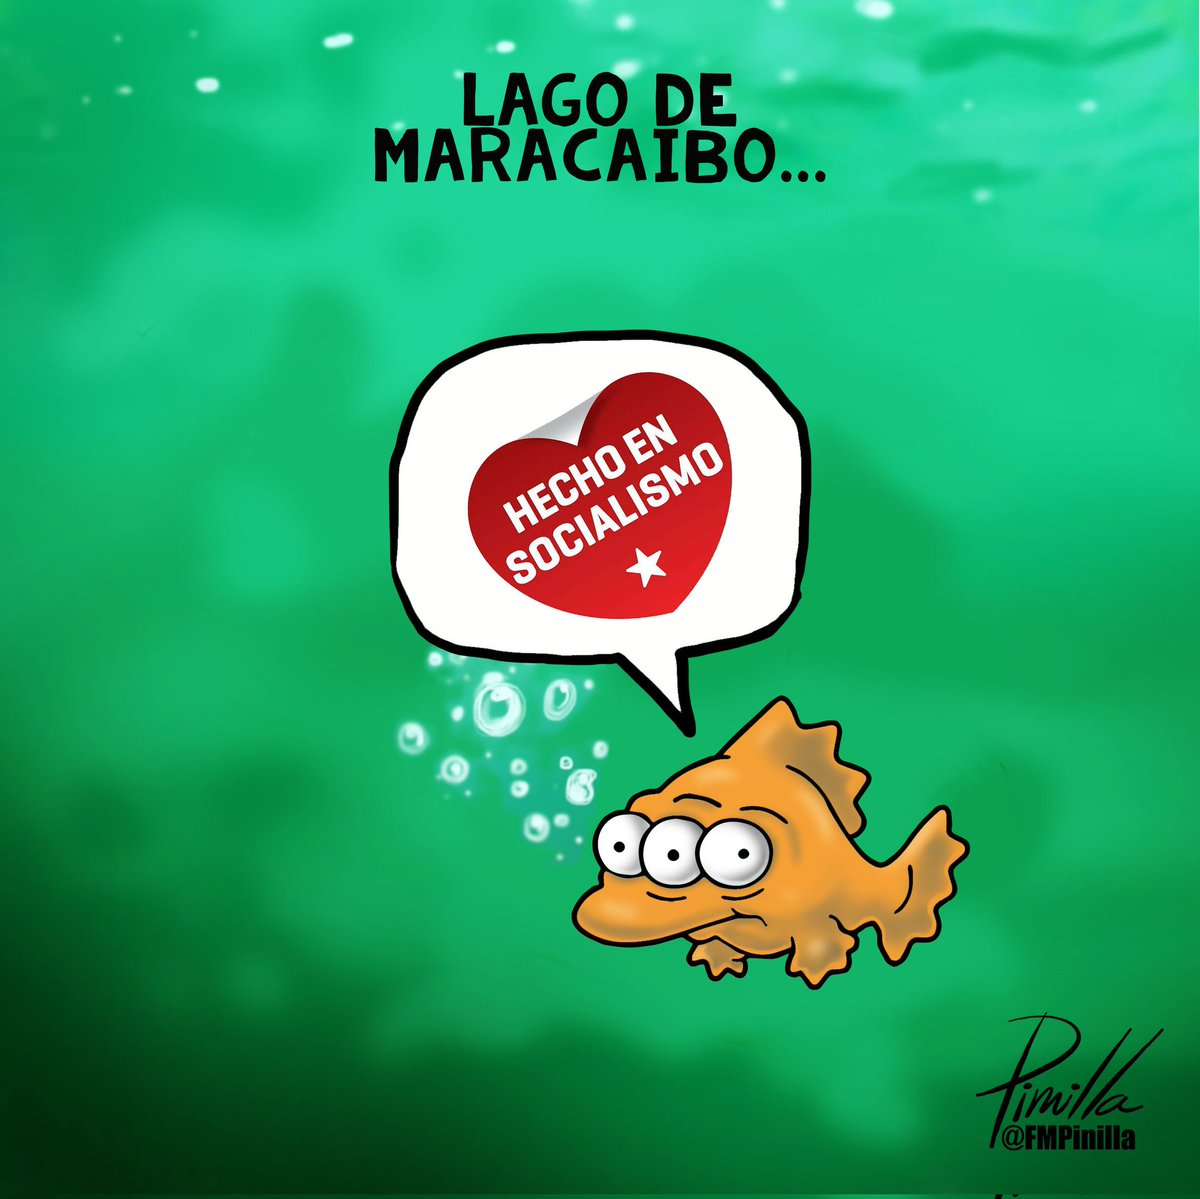 #LagodeMaracaibo...
•
#caricatura para @elnacionalweb.
•
#caricatura #Cartoon #venezuela #venezolanos #maracaibo #Zulia